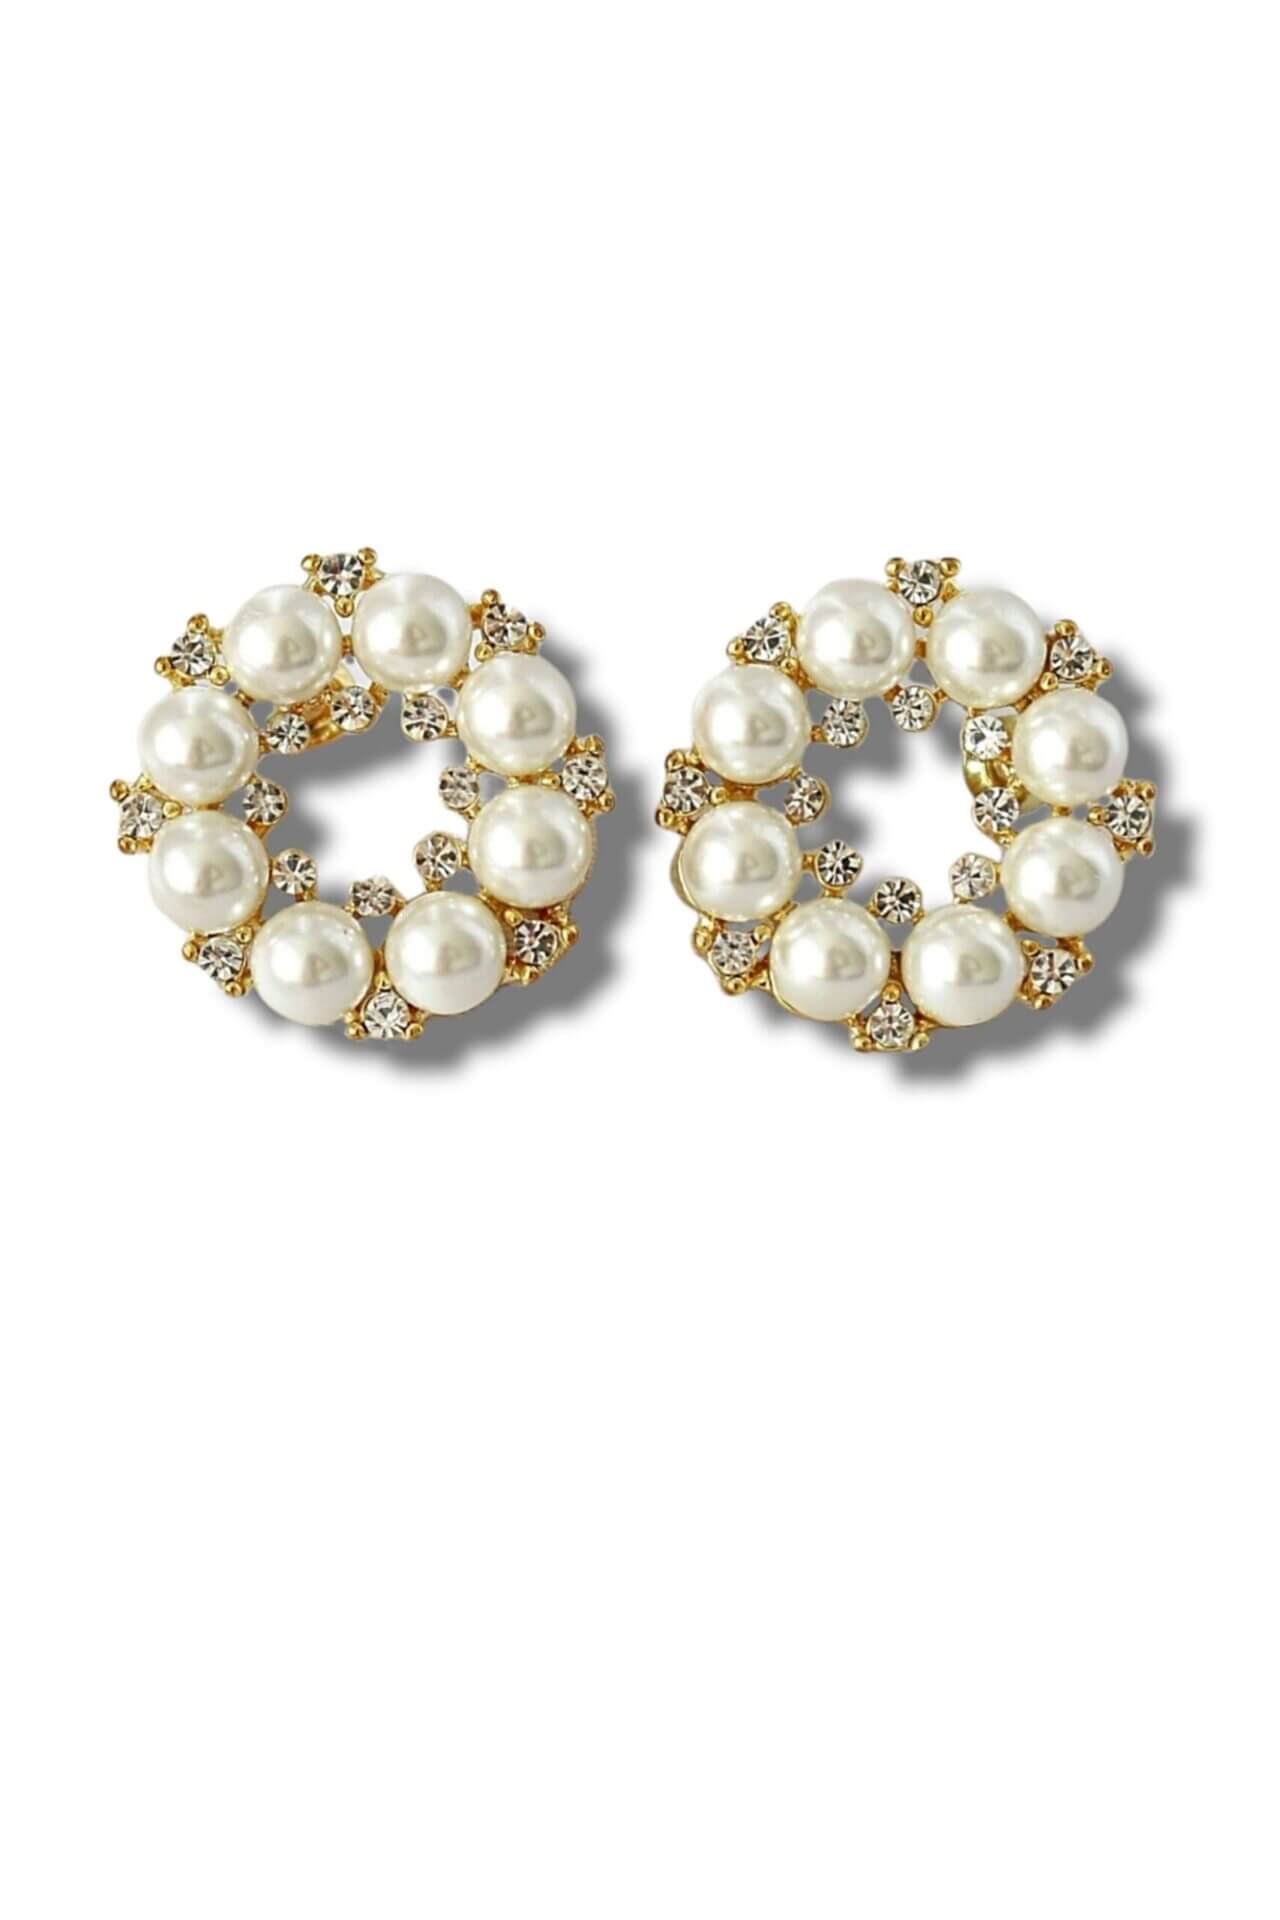 18 karat baroque pearl stud earrings